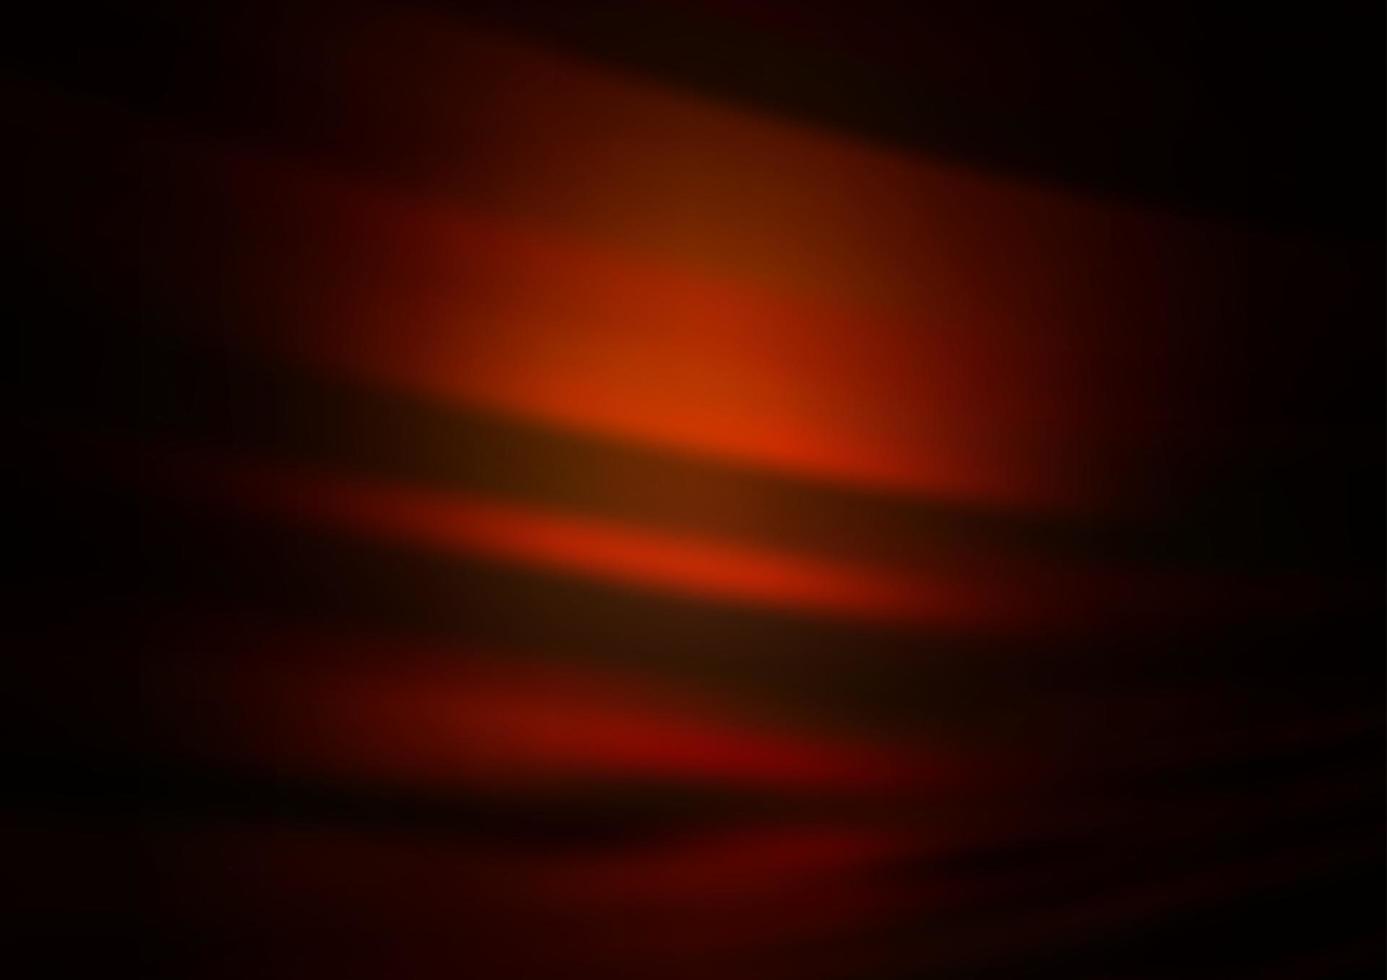 Dark Orange vector blurred shine abstract background.